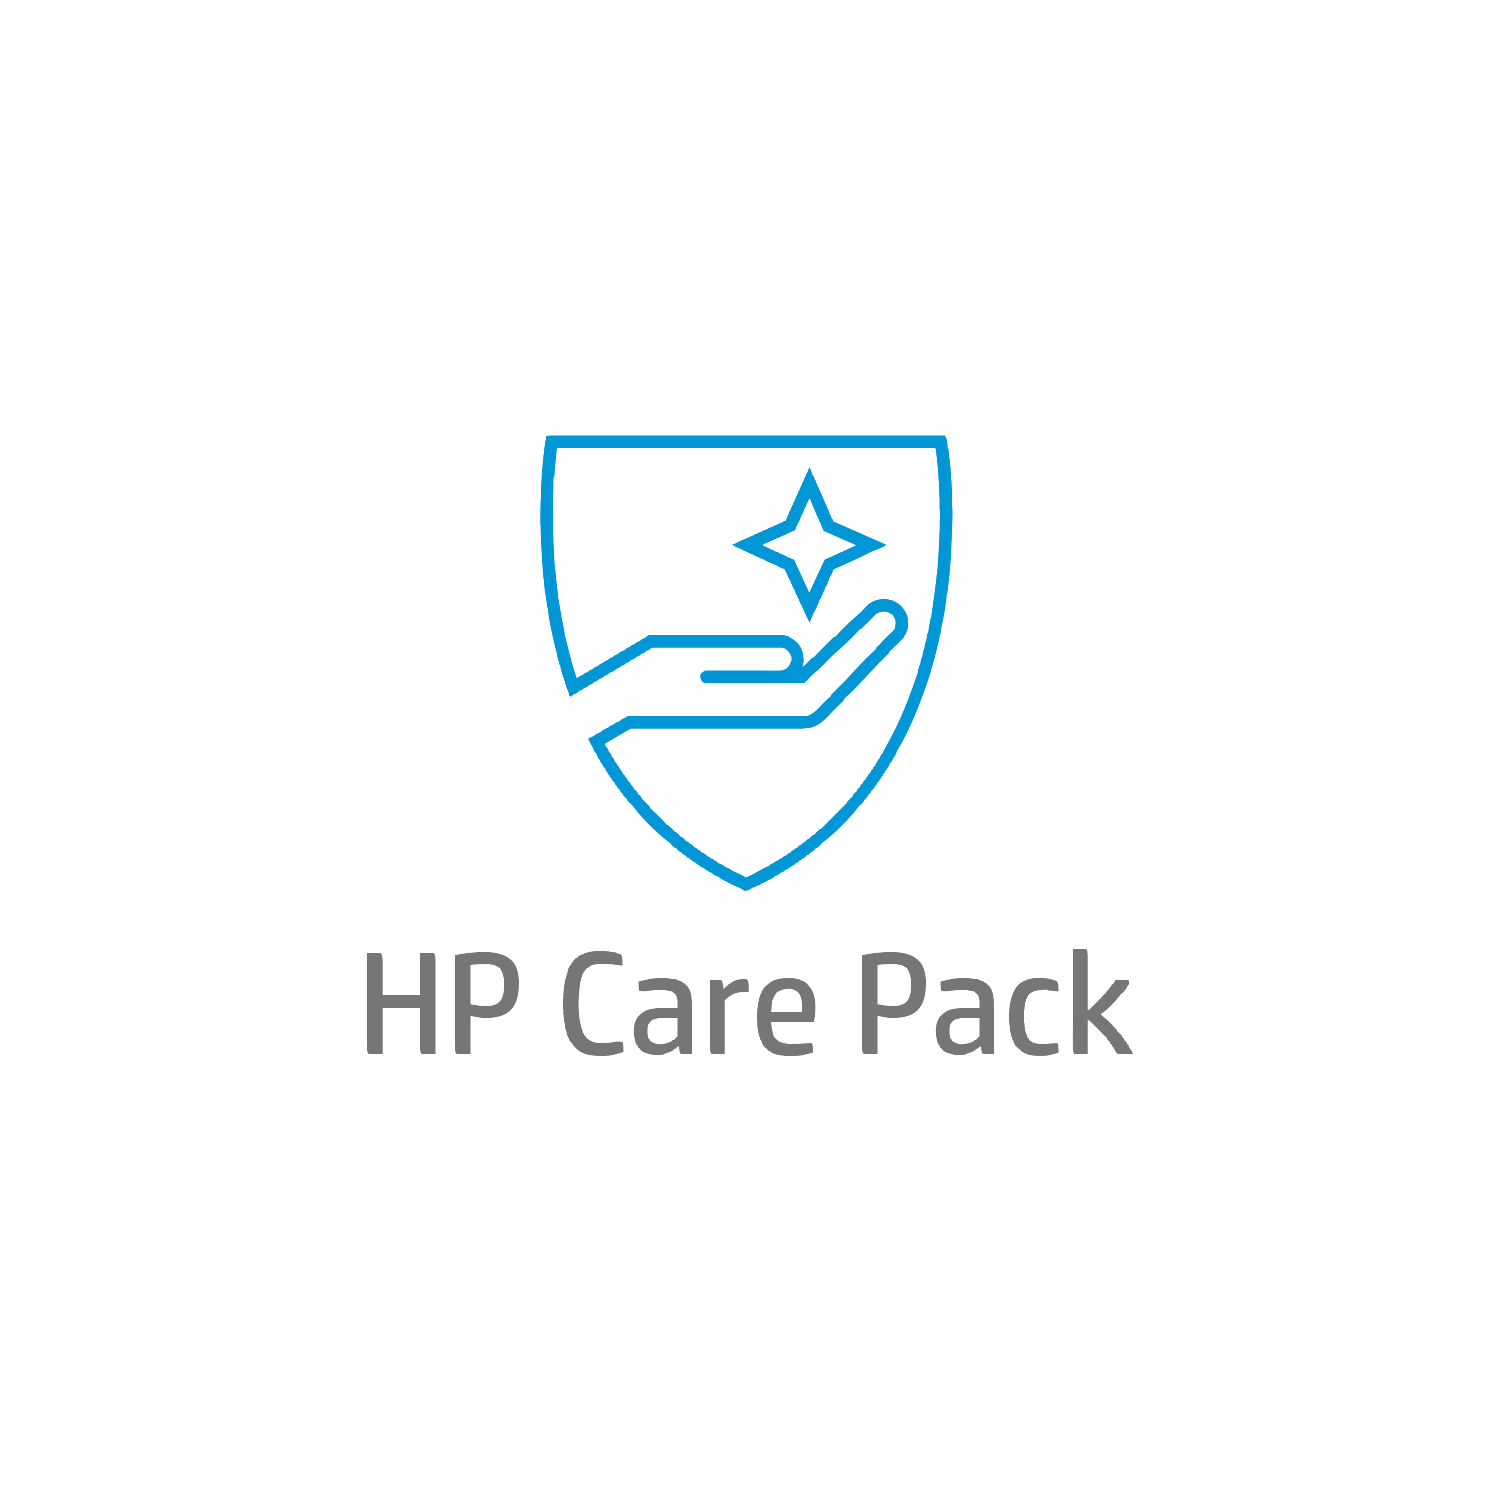 Bild von HP 3 Jahre Active Care Hardware-Support vor Ort mit Reaktion bis zum nächsten Werktag und Abdeckung auf Reisen für Notebooks - 3 Jahr(e) - Vor Ort